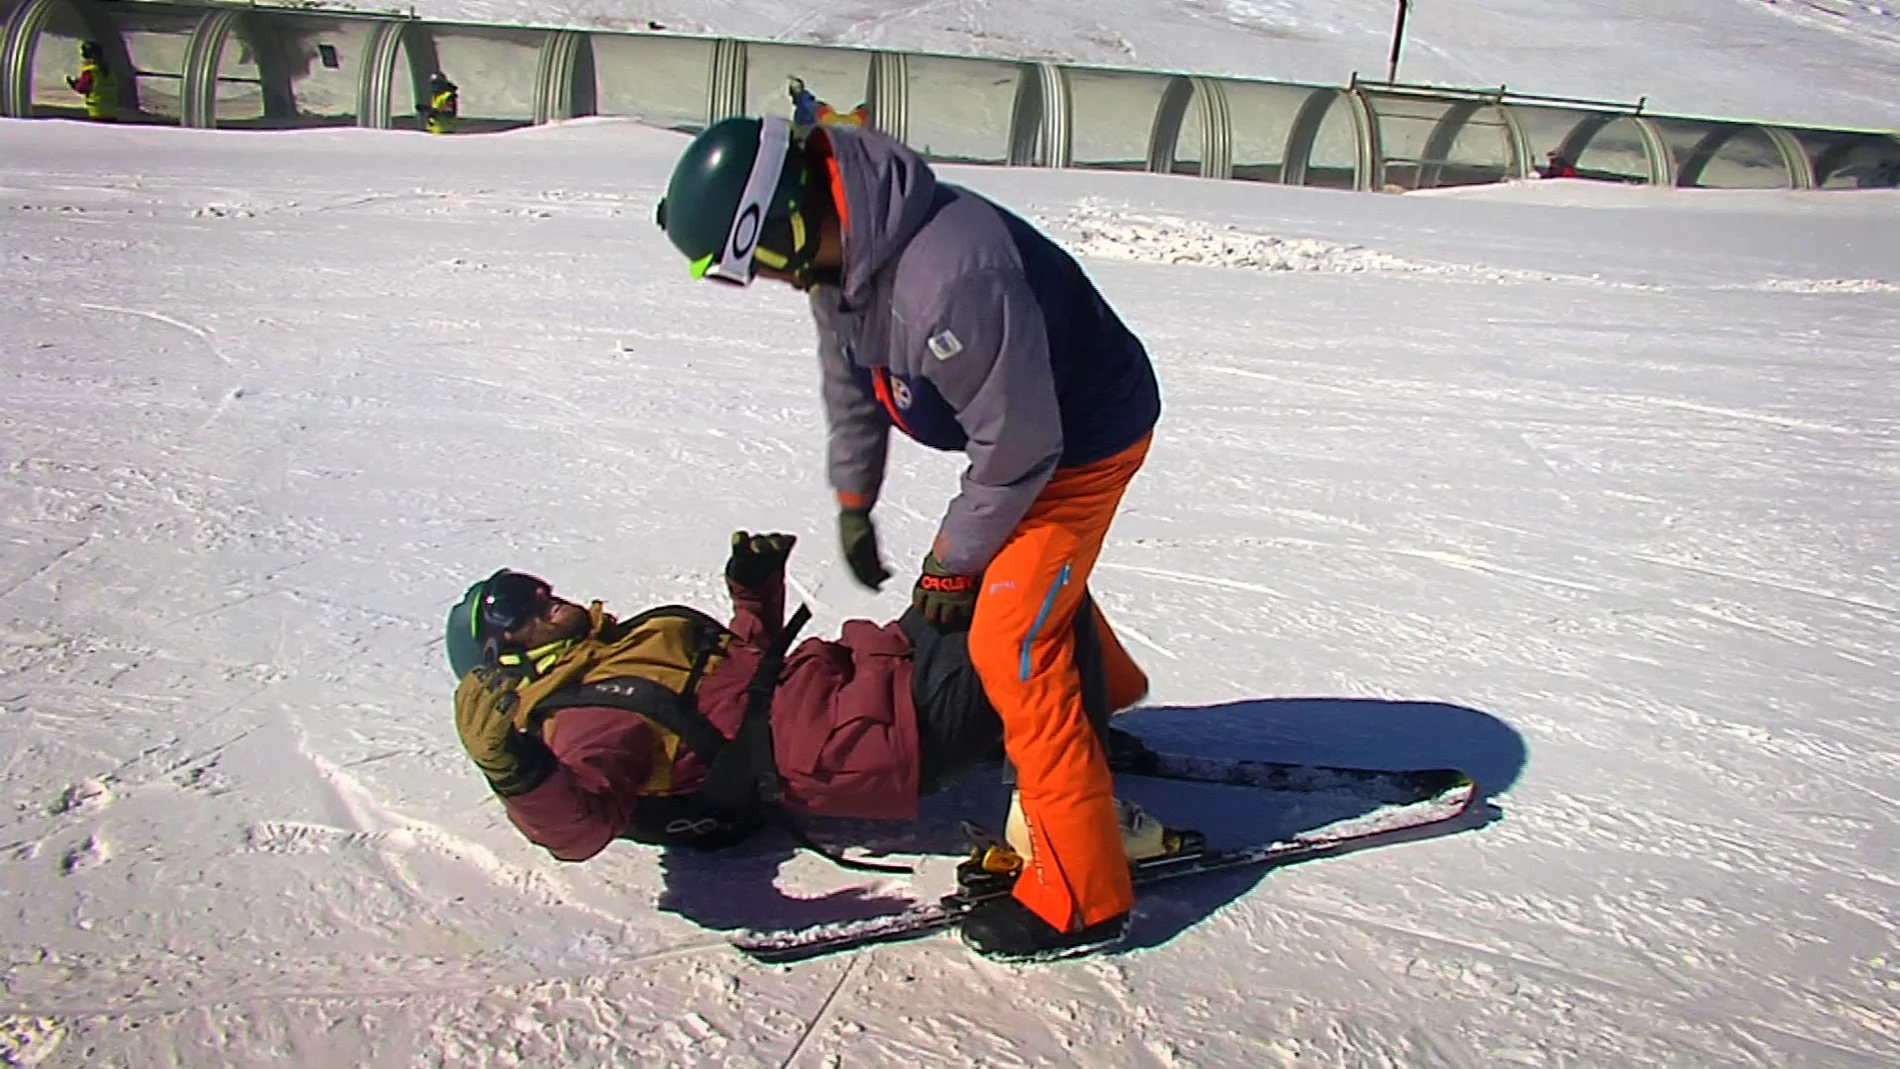 La inspiradora lucha de Nico por recuperar su pasión por el esquí perdida por un trágico accidente